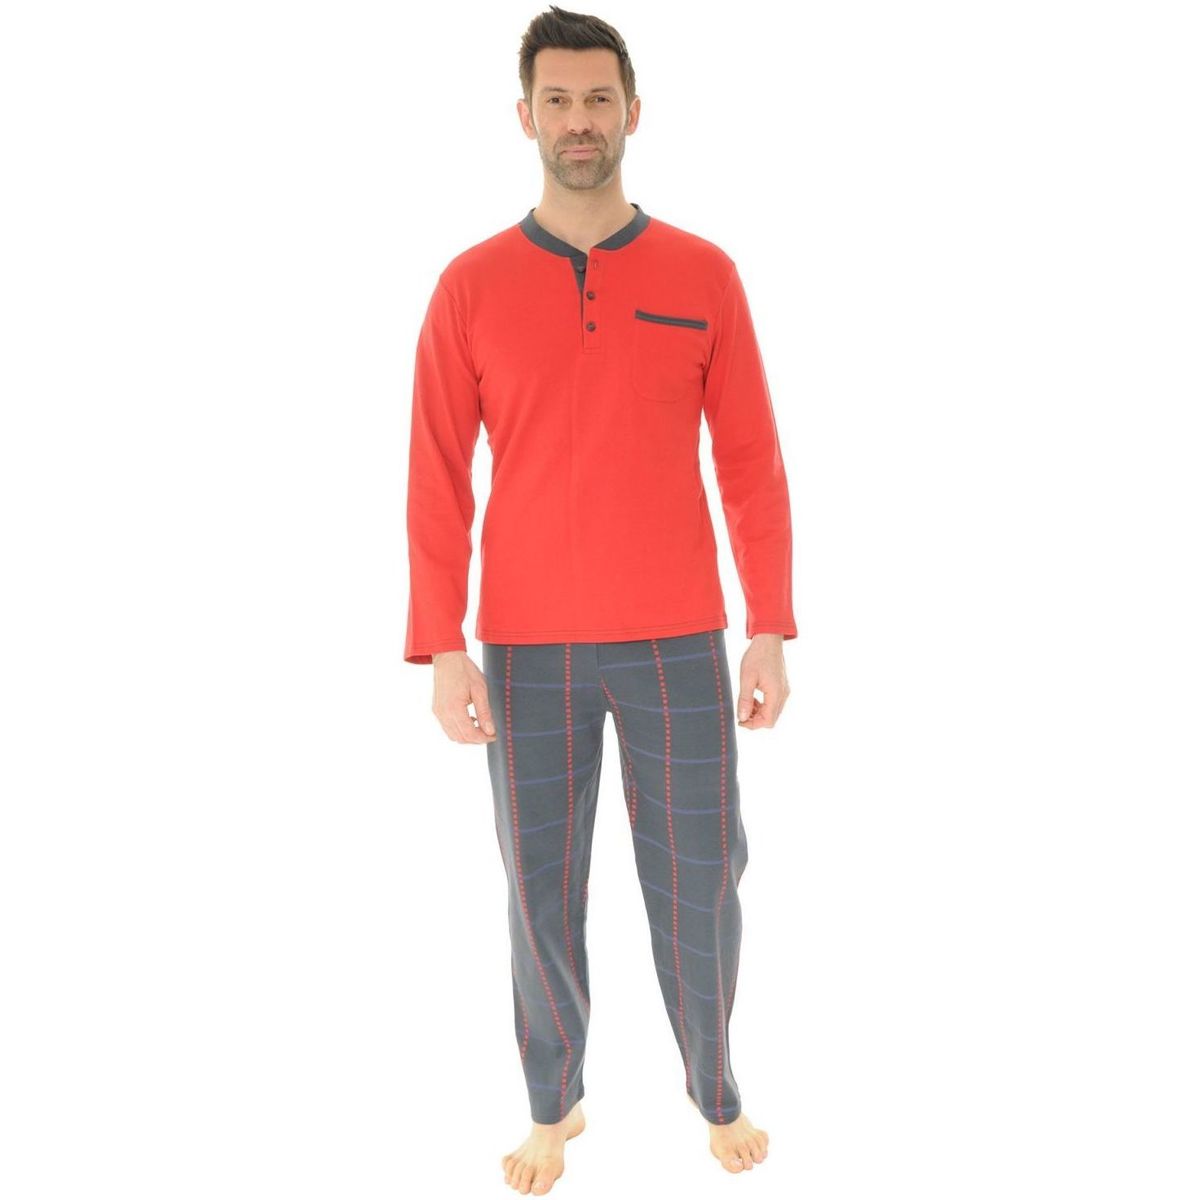 Îmbracaminte Bărbați Pijamale și Cămăsi de noapte Christian Cane SOREL roșu